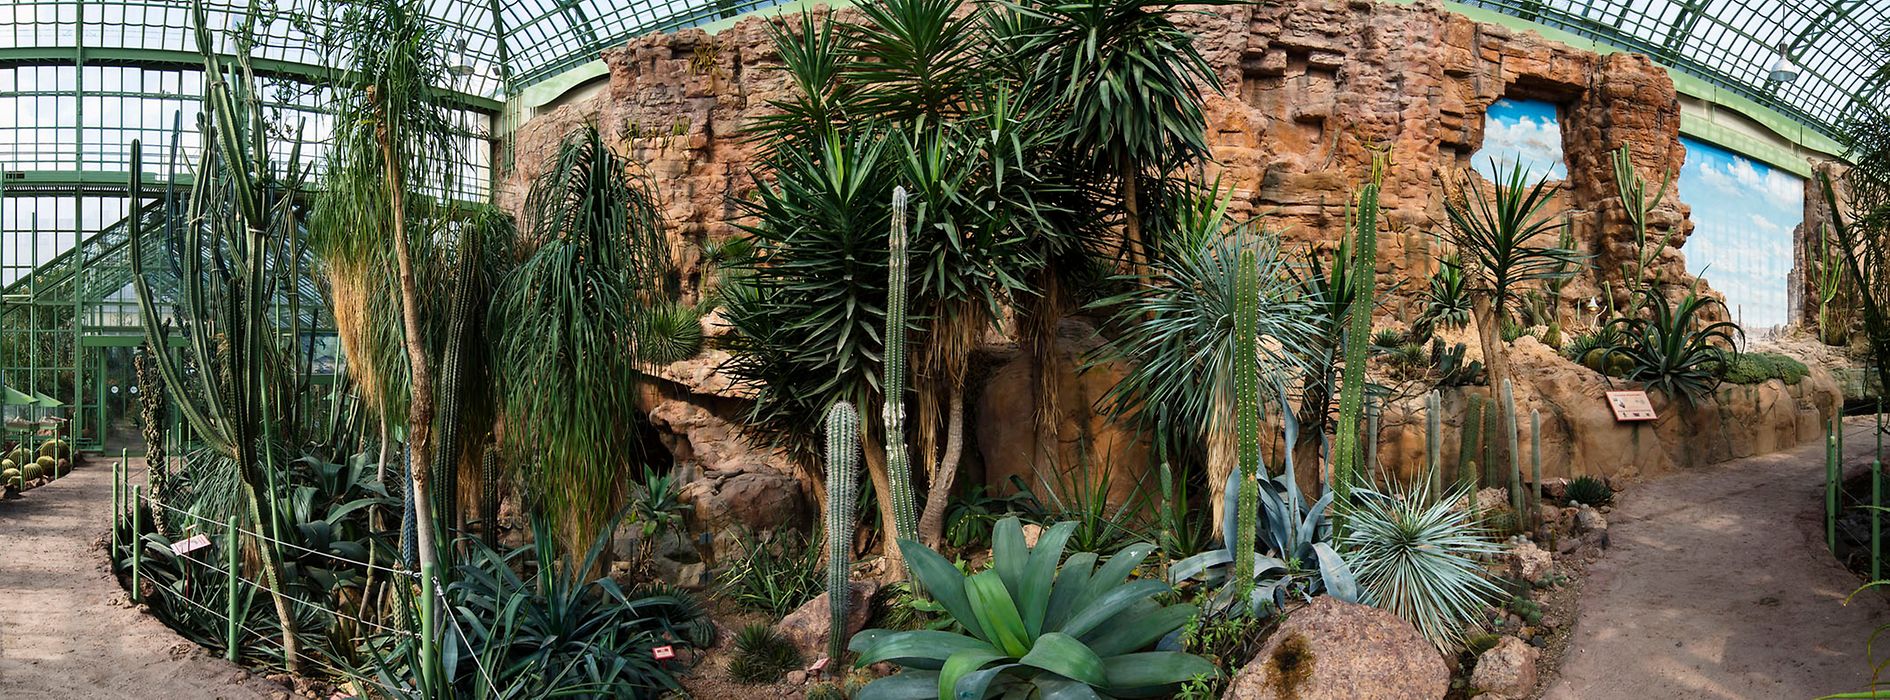 Cactus sobre rocas en la Casa del Desierto